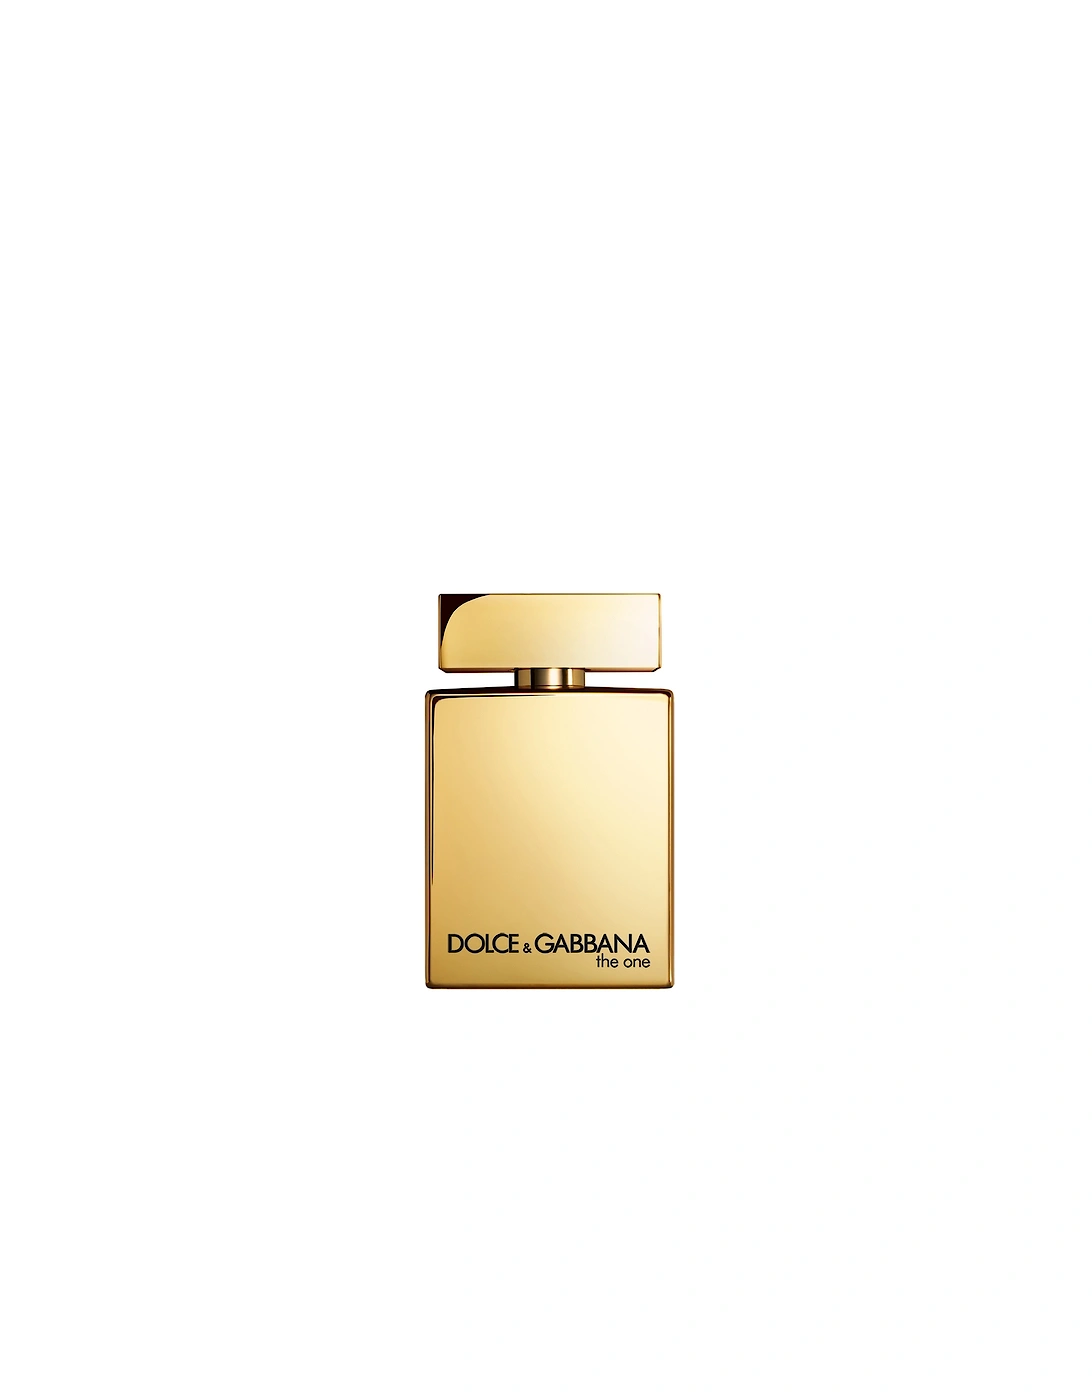 Dolce&Gabbana The One Gold Eau de Parfum Intense Pour Homme 50ml, 2 of 1